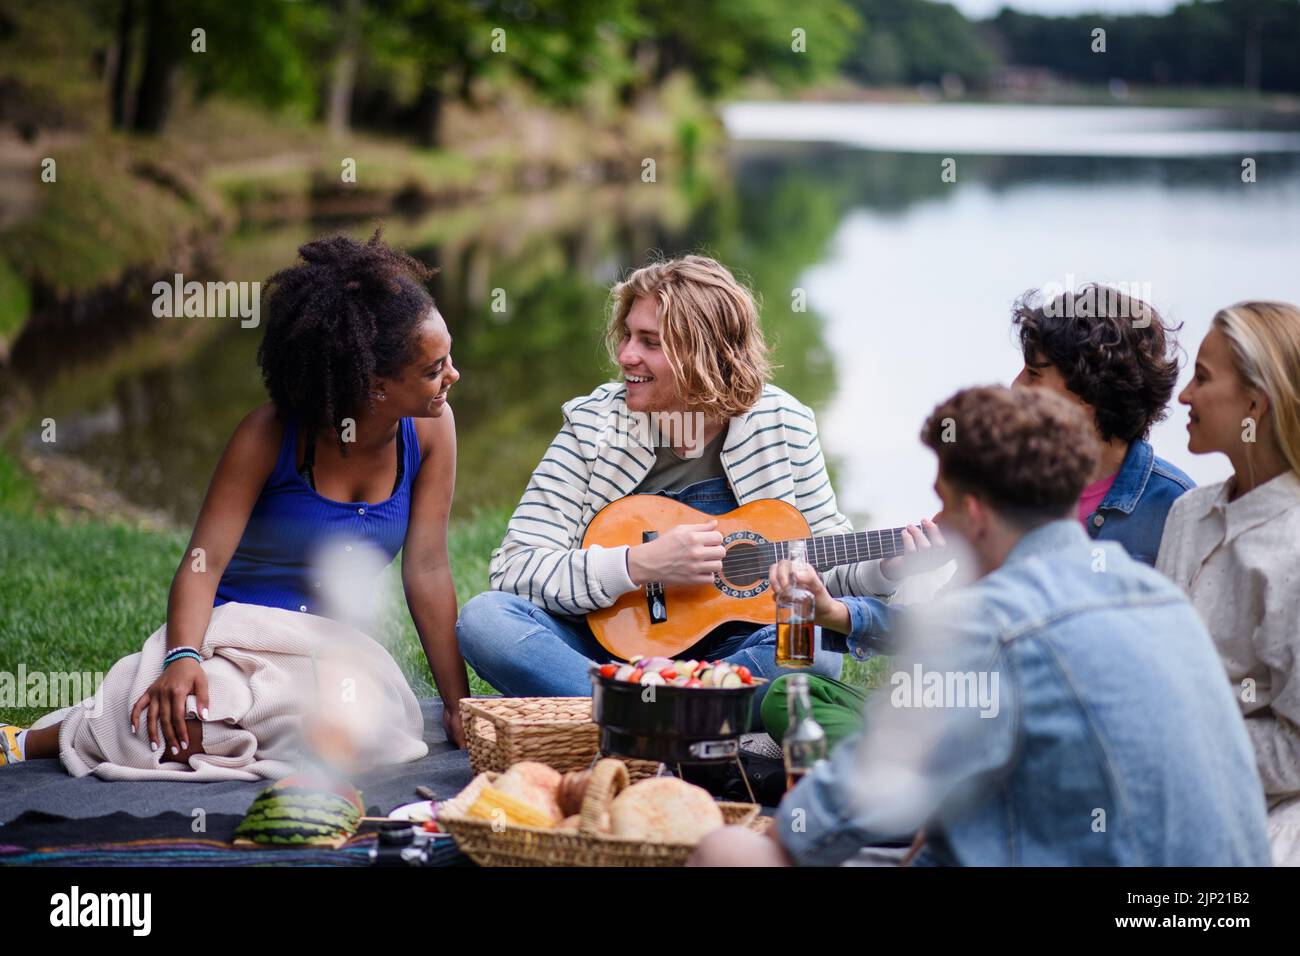 Grupo de amigos divirtiéndose en un picnic cerca de un lago, sentados en la manta comiendo y tocando la guitarra. Foto de stock